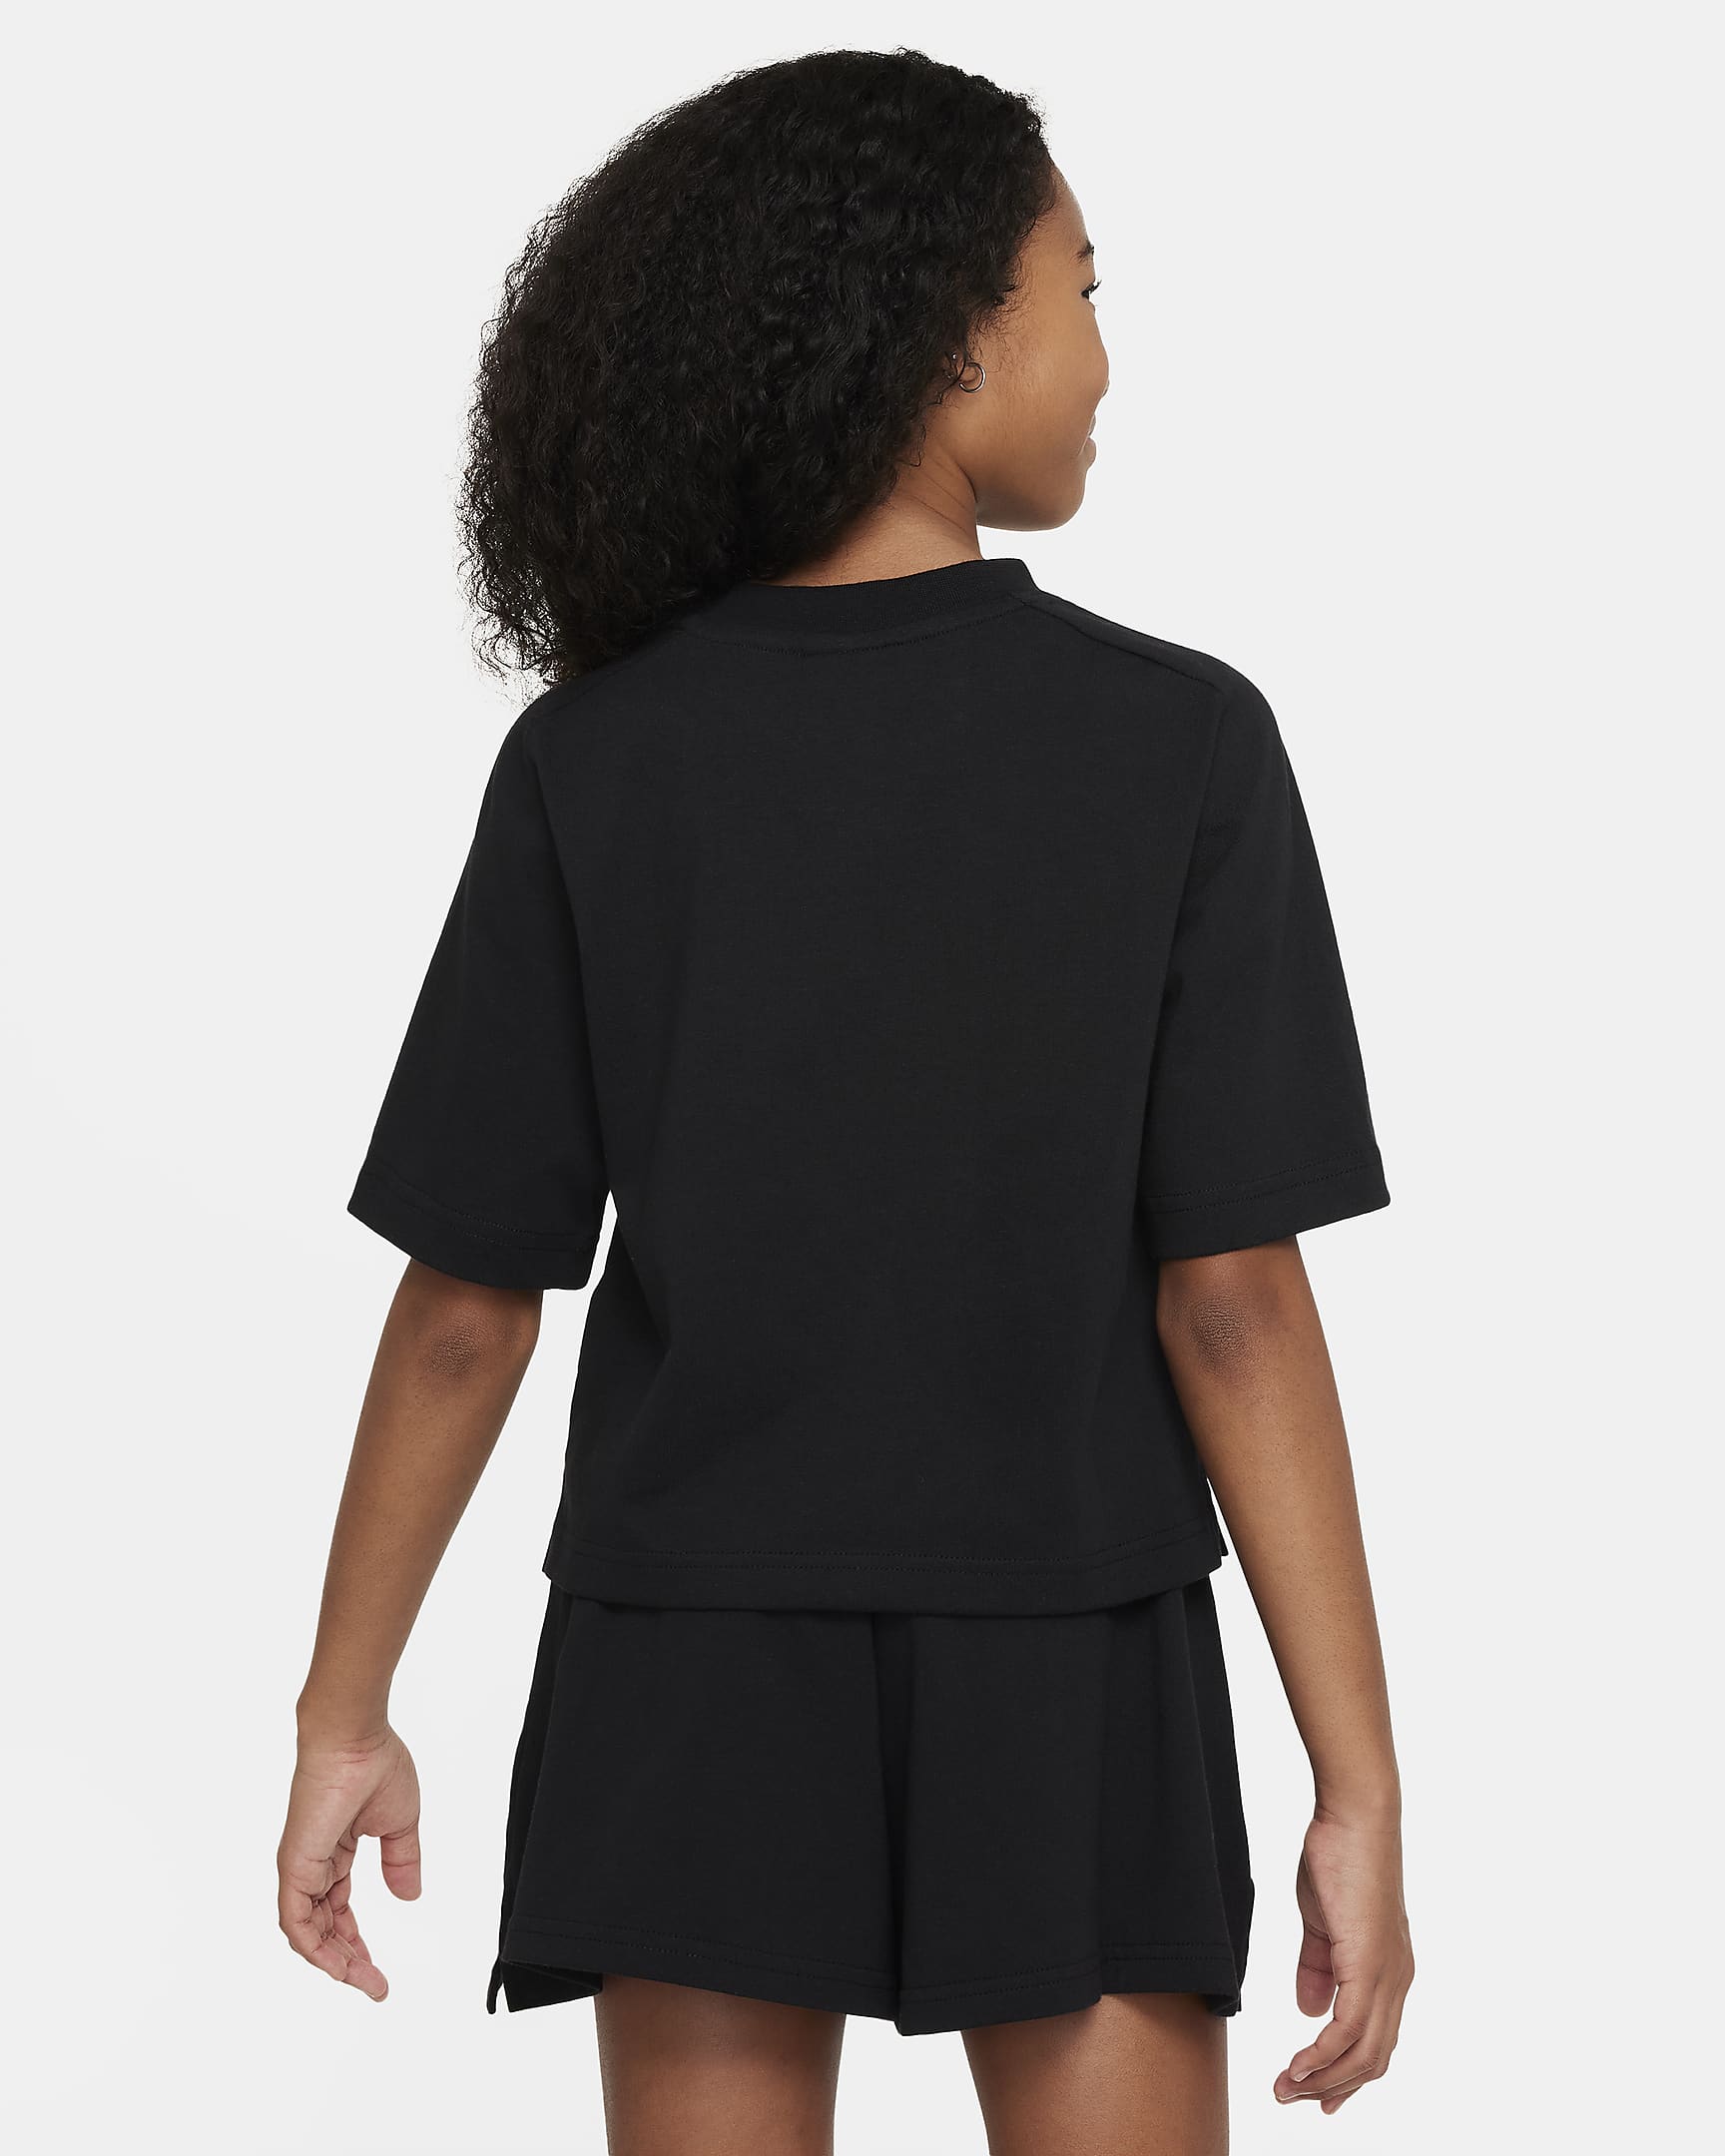 Nike Sportswear Older Kids' (Girls') Short-Sleeve Top. Nike IE